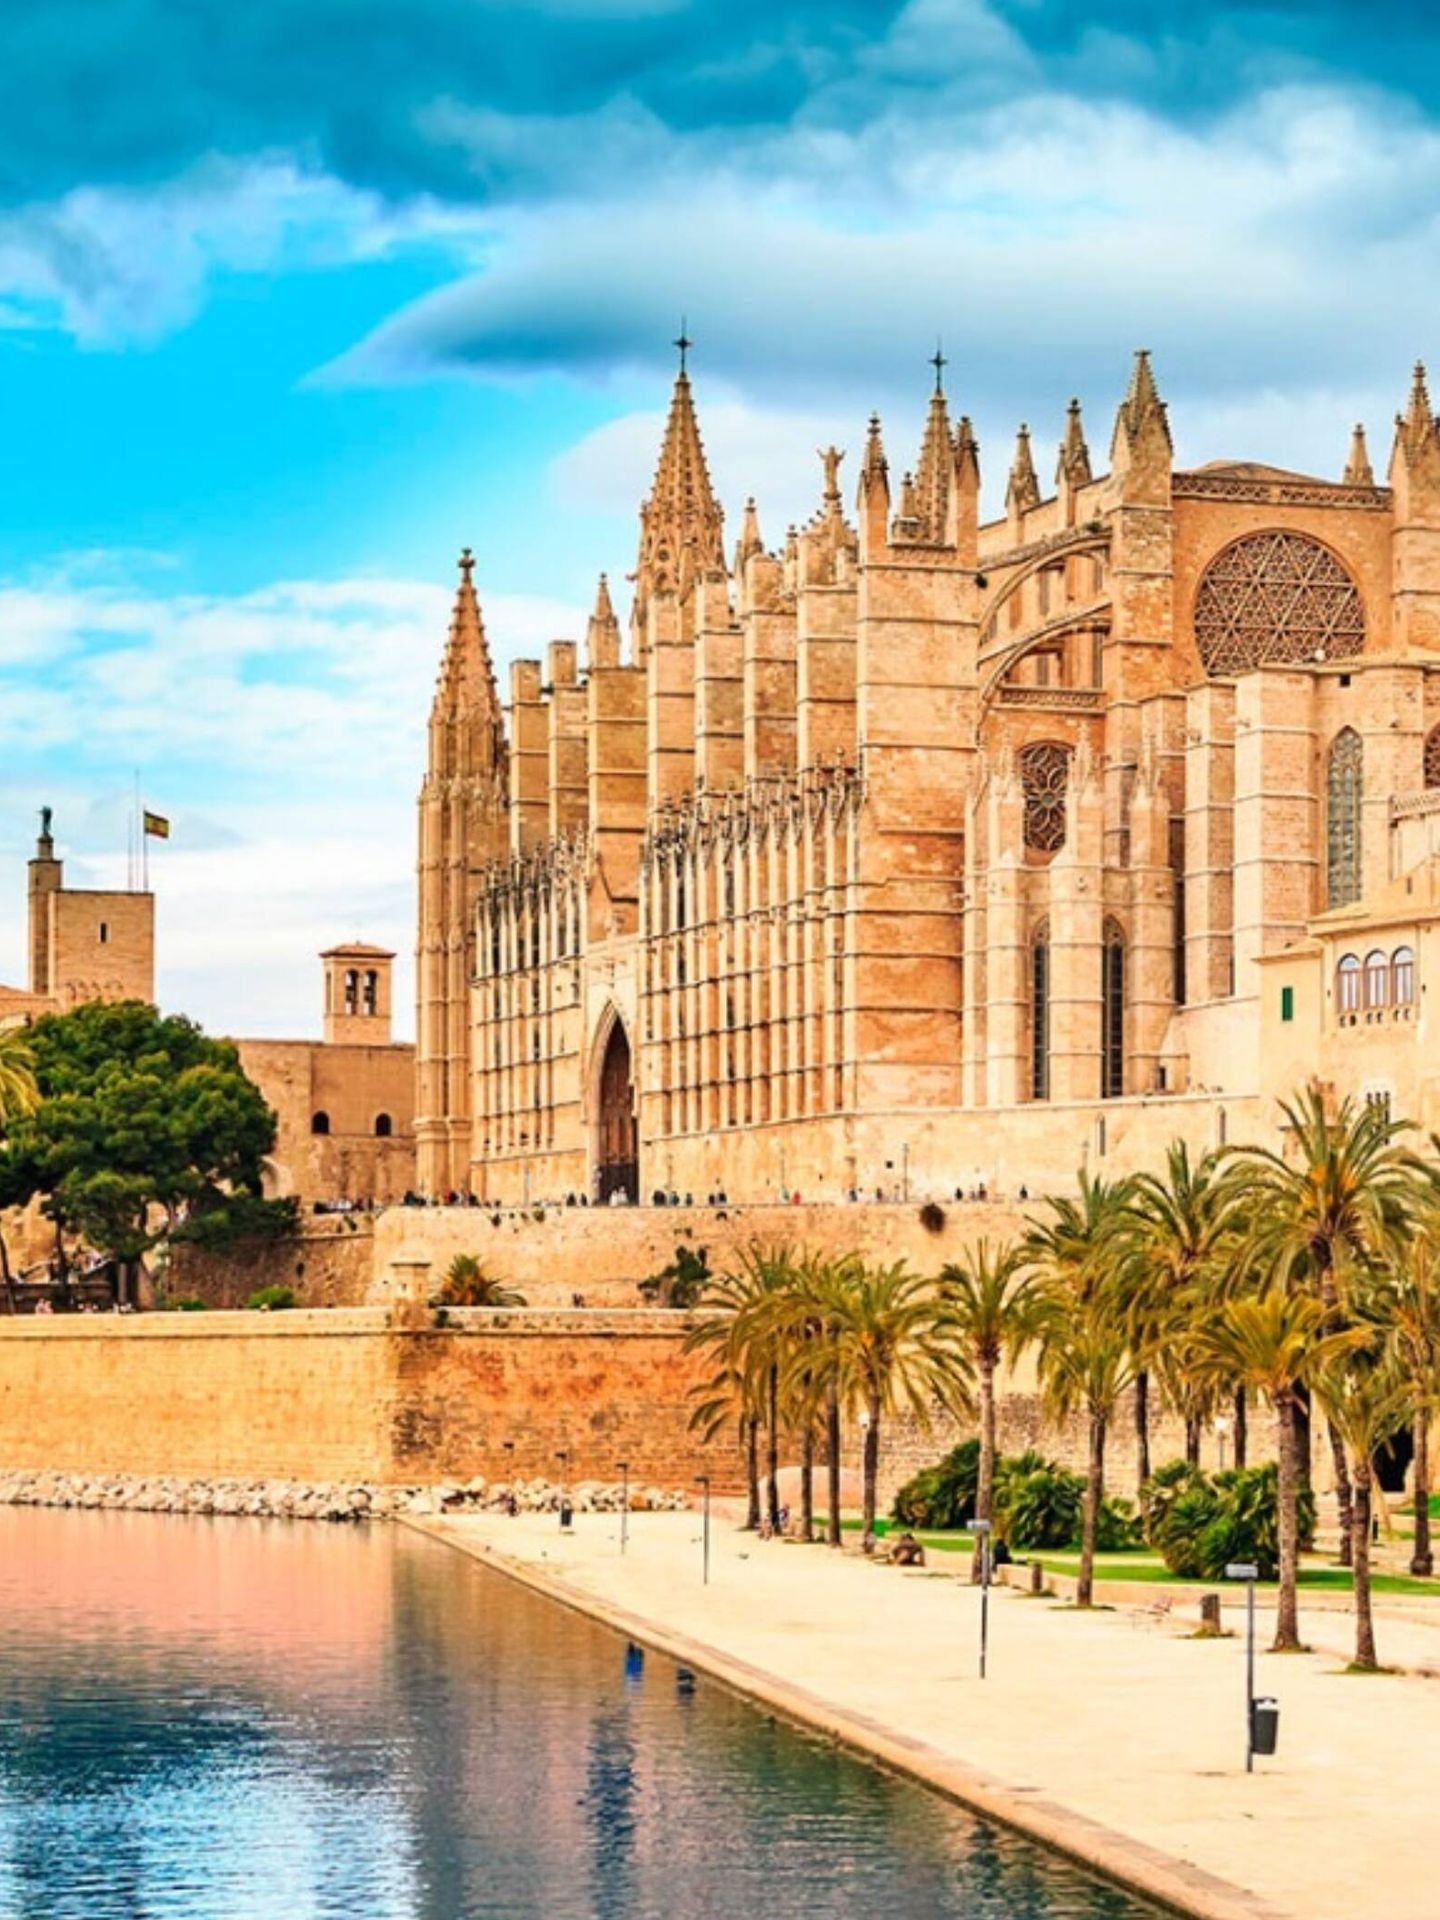 Descubre las catedrales de España, como la catedral de Palma de Mallorca. (Cortesía/Oficina de Turismo de España)